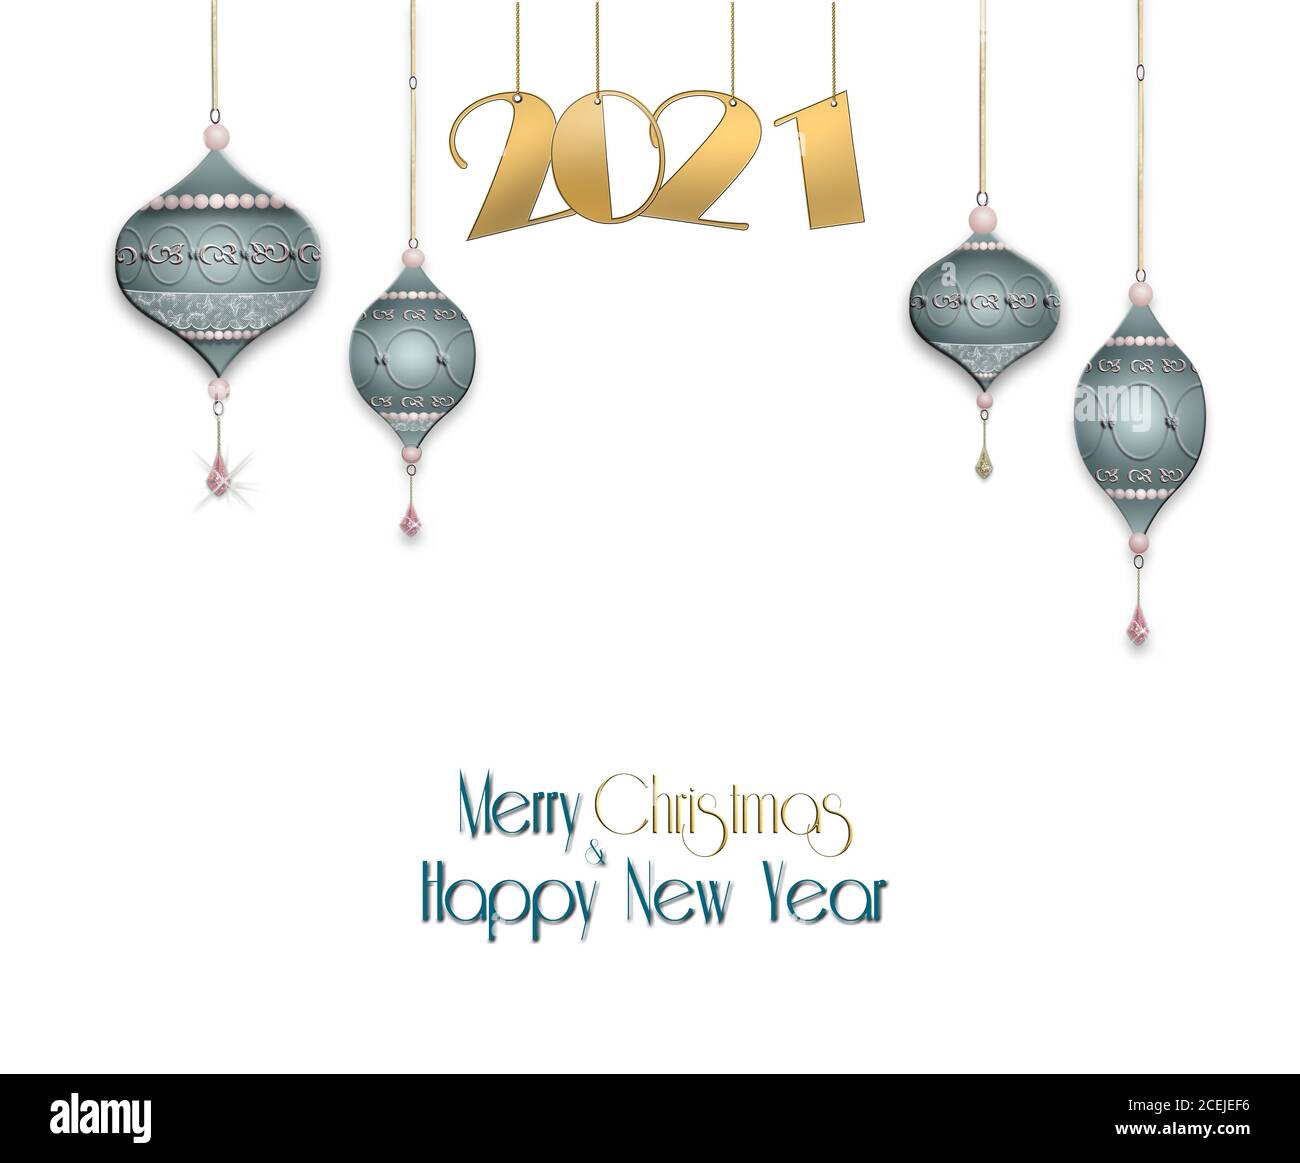 Nouvel an, fond de Noël avec boules bleues suspendues avec ornement d'or et chiffre d'or suspendu 2021 sur fond vert pastel. Copier l'espace. Illustration 3D Banque D'Images